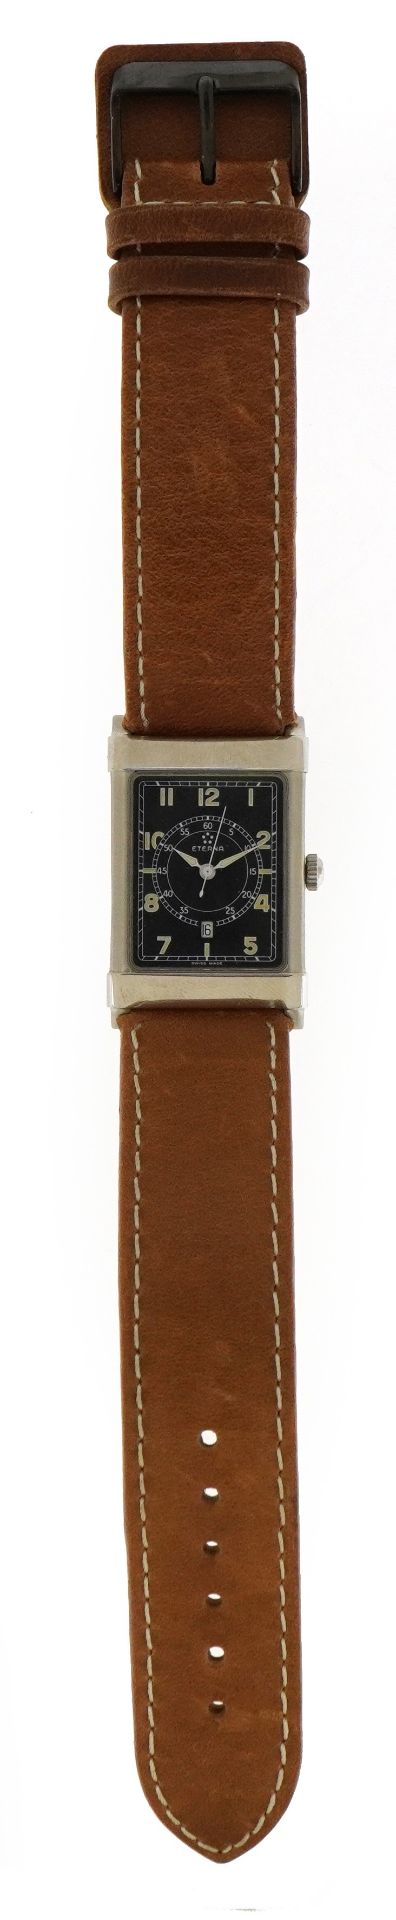 Eterna, gentlemen's Eterna-Matic Les Historiques 1935 gentlemen's wristwatch with date dial, 24mm - Image 2 of 4